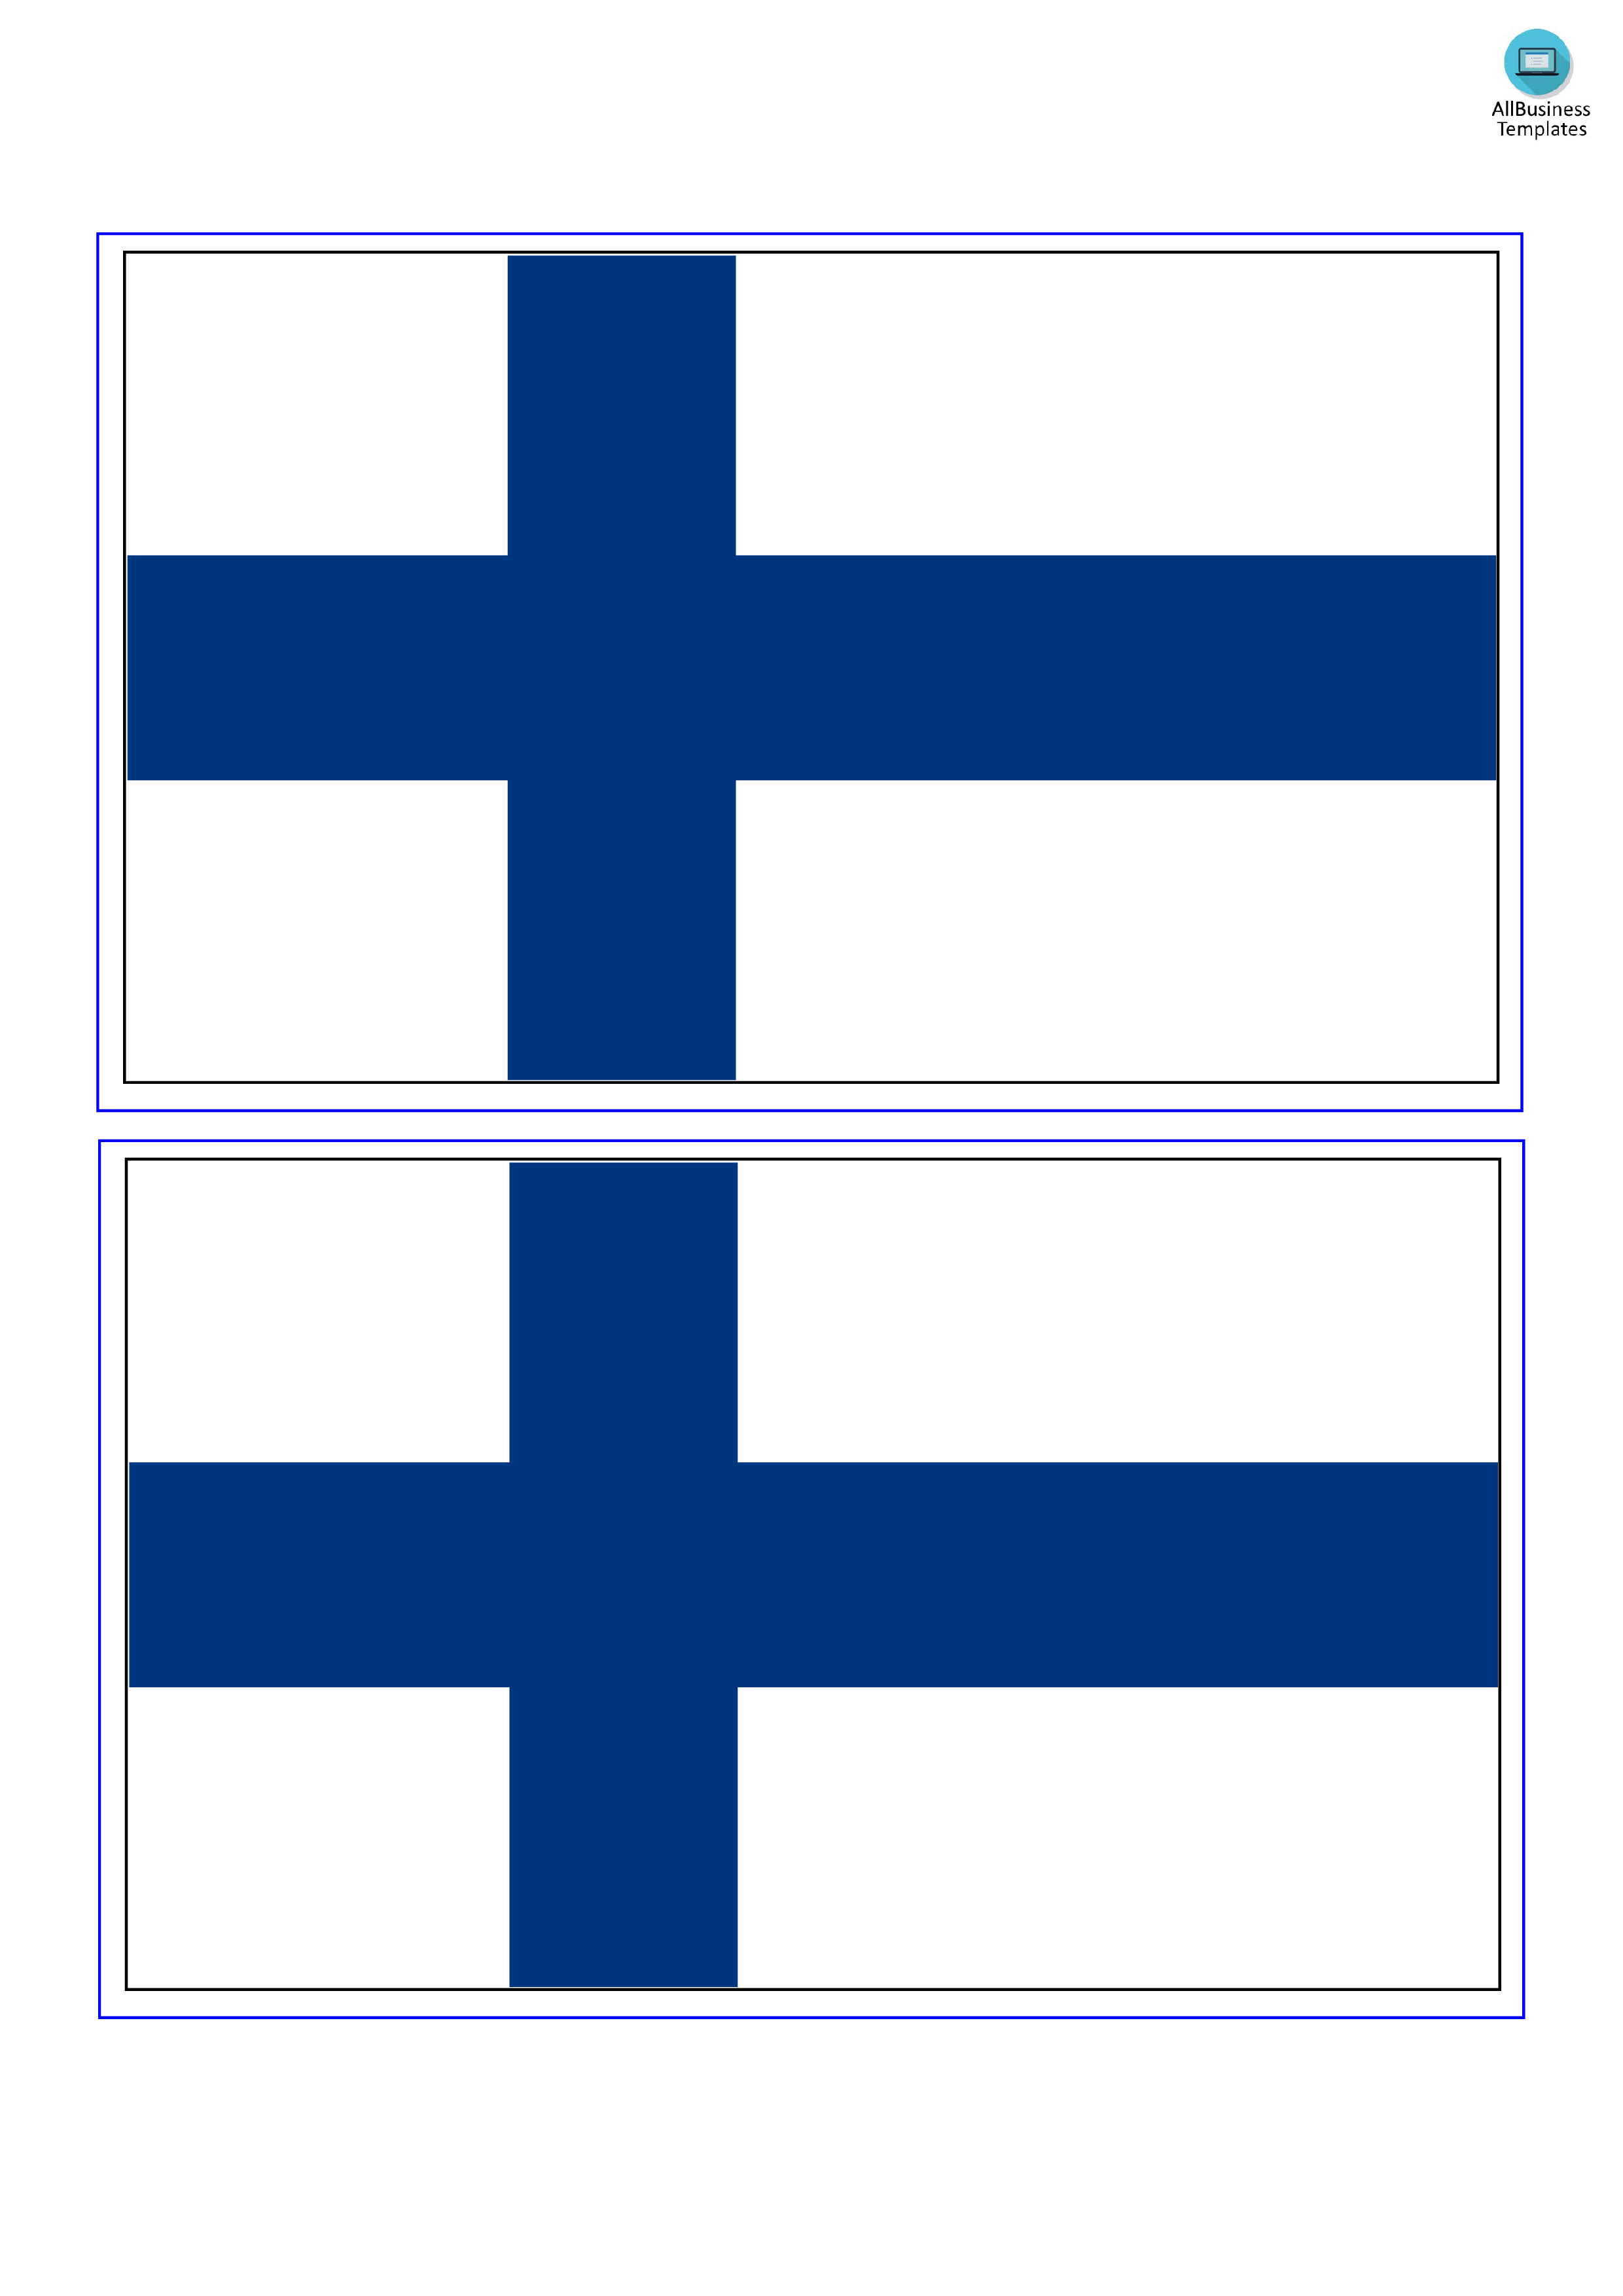 finland flag plantilla imagen principal